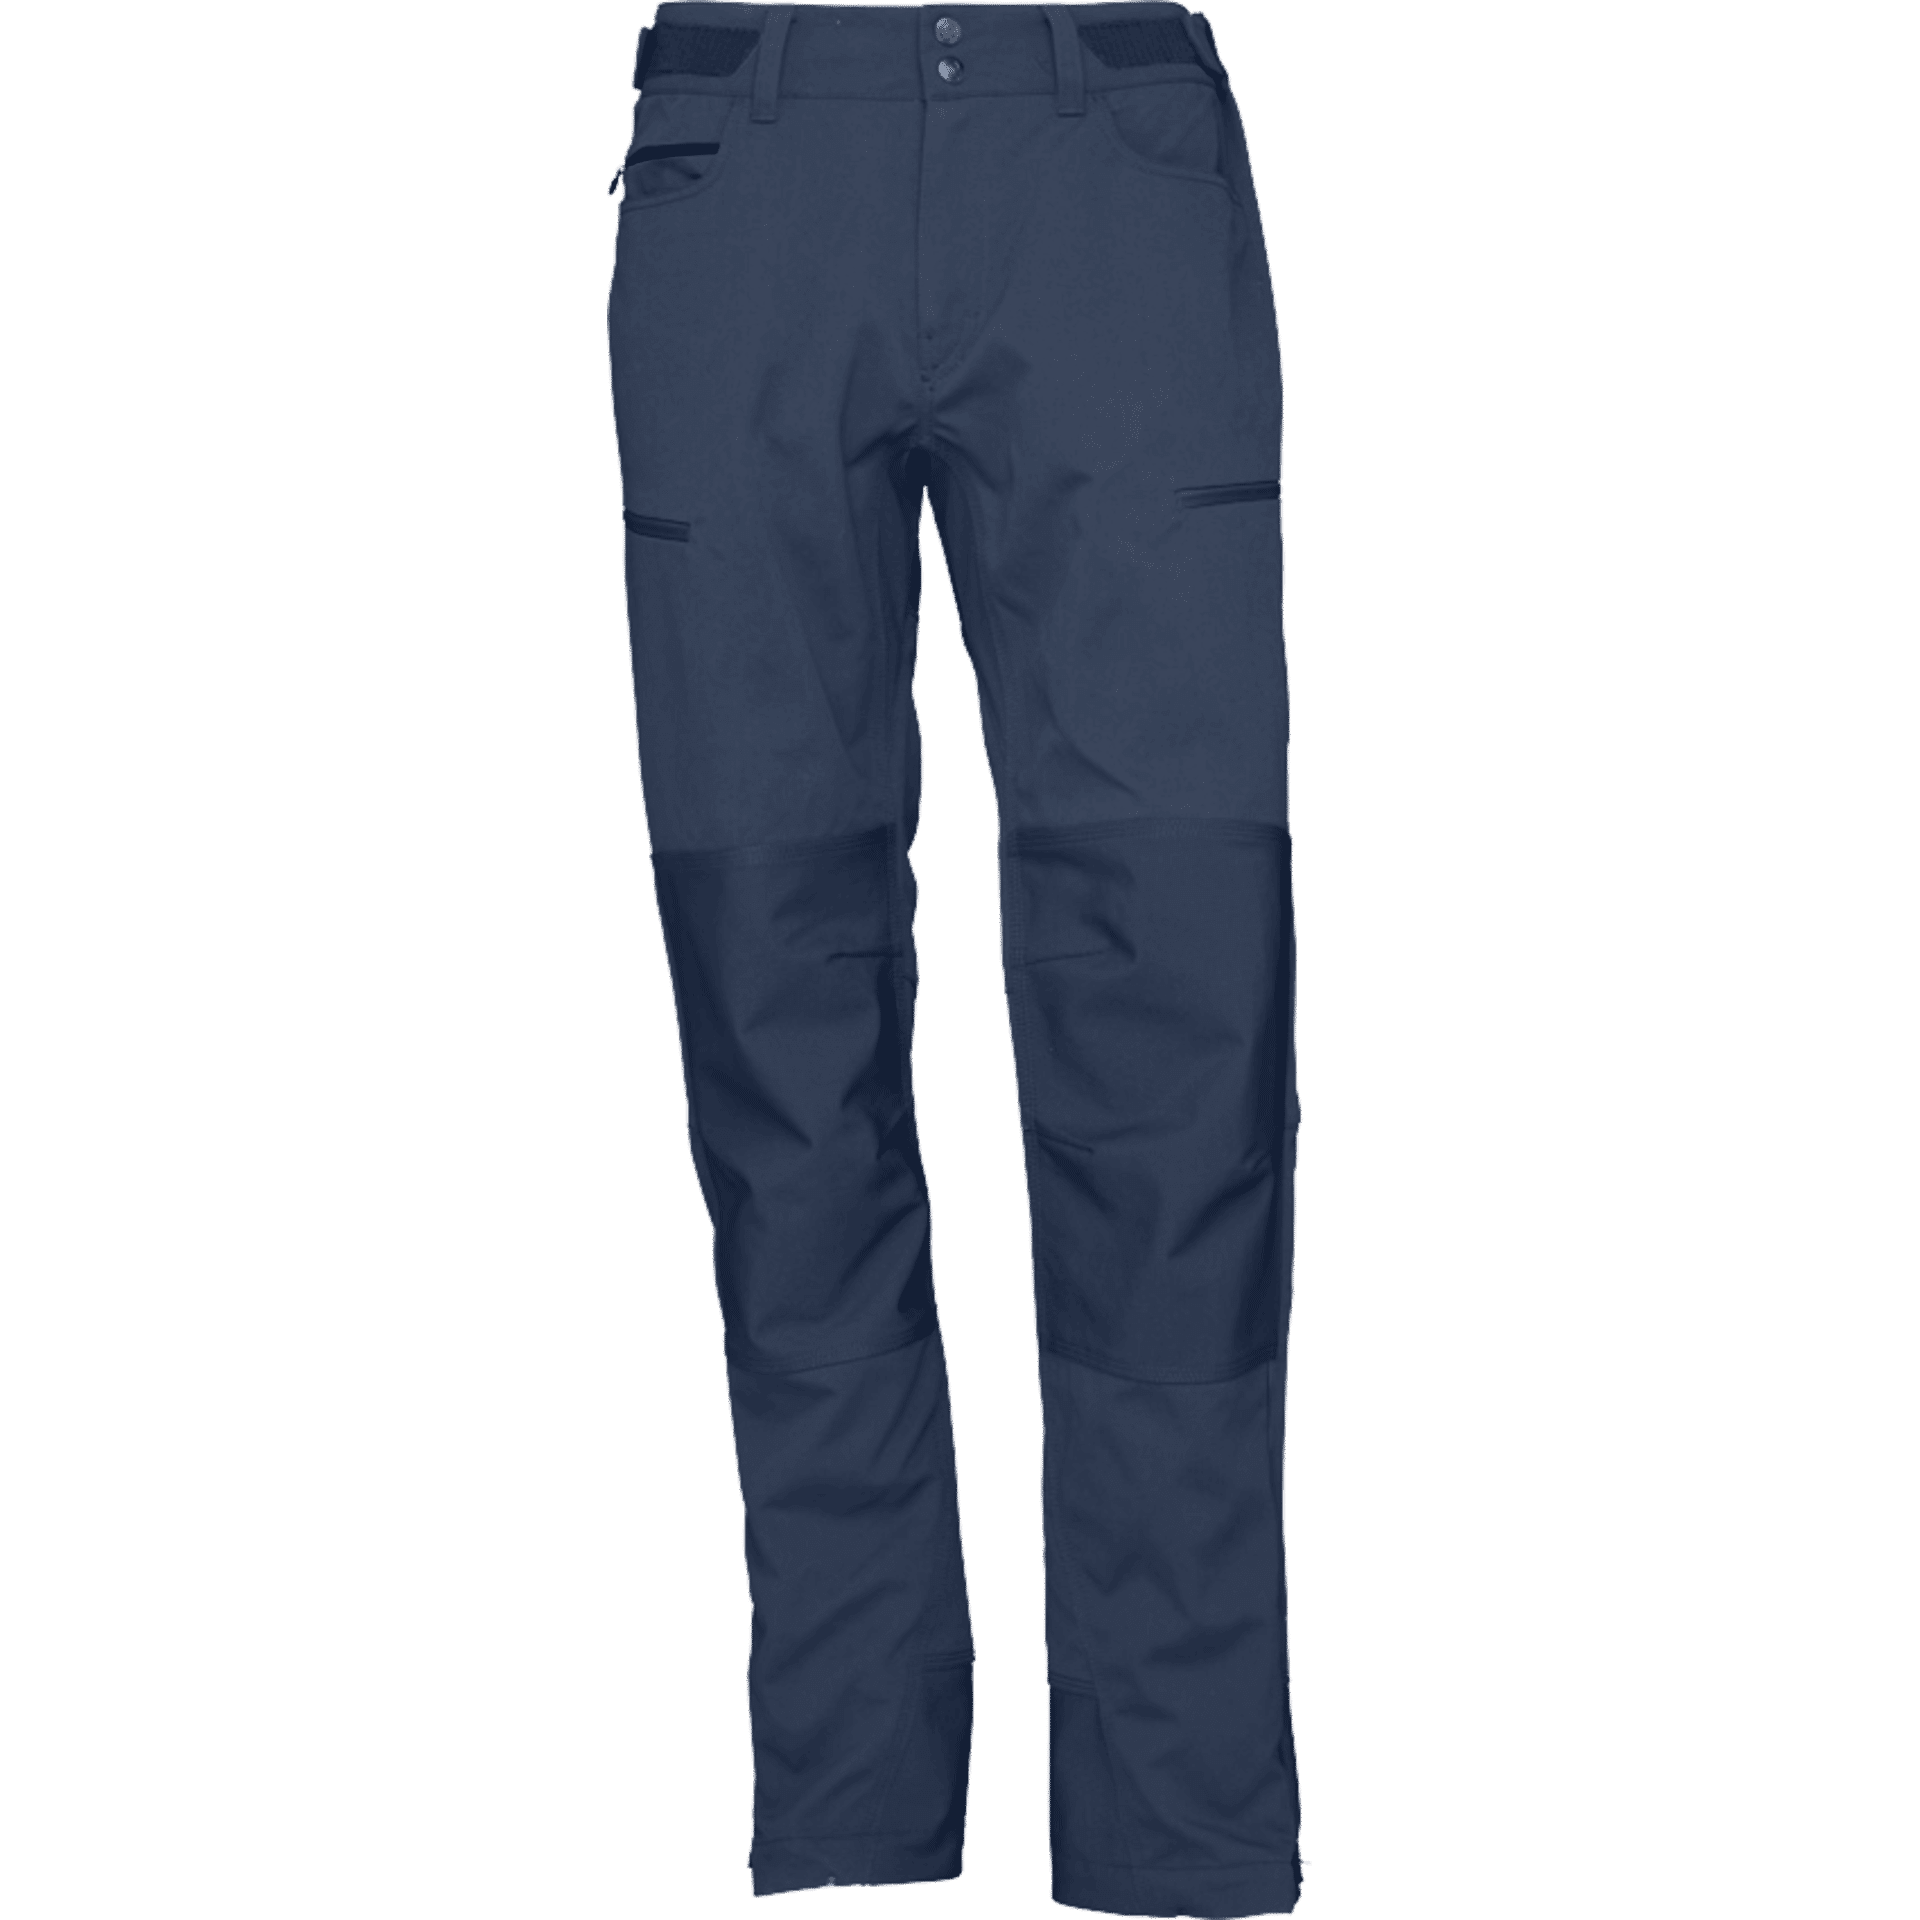 Norrøna Svalbard Heavy Duty Pants - Walking pants - Men's